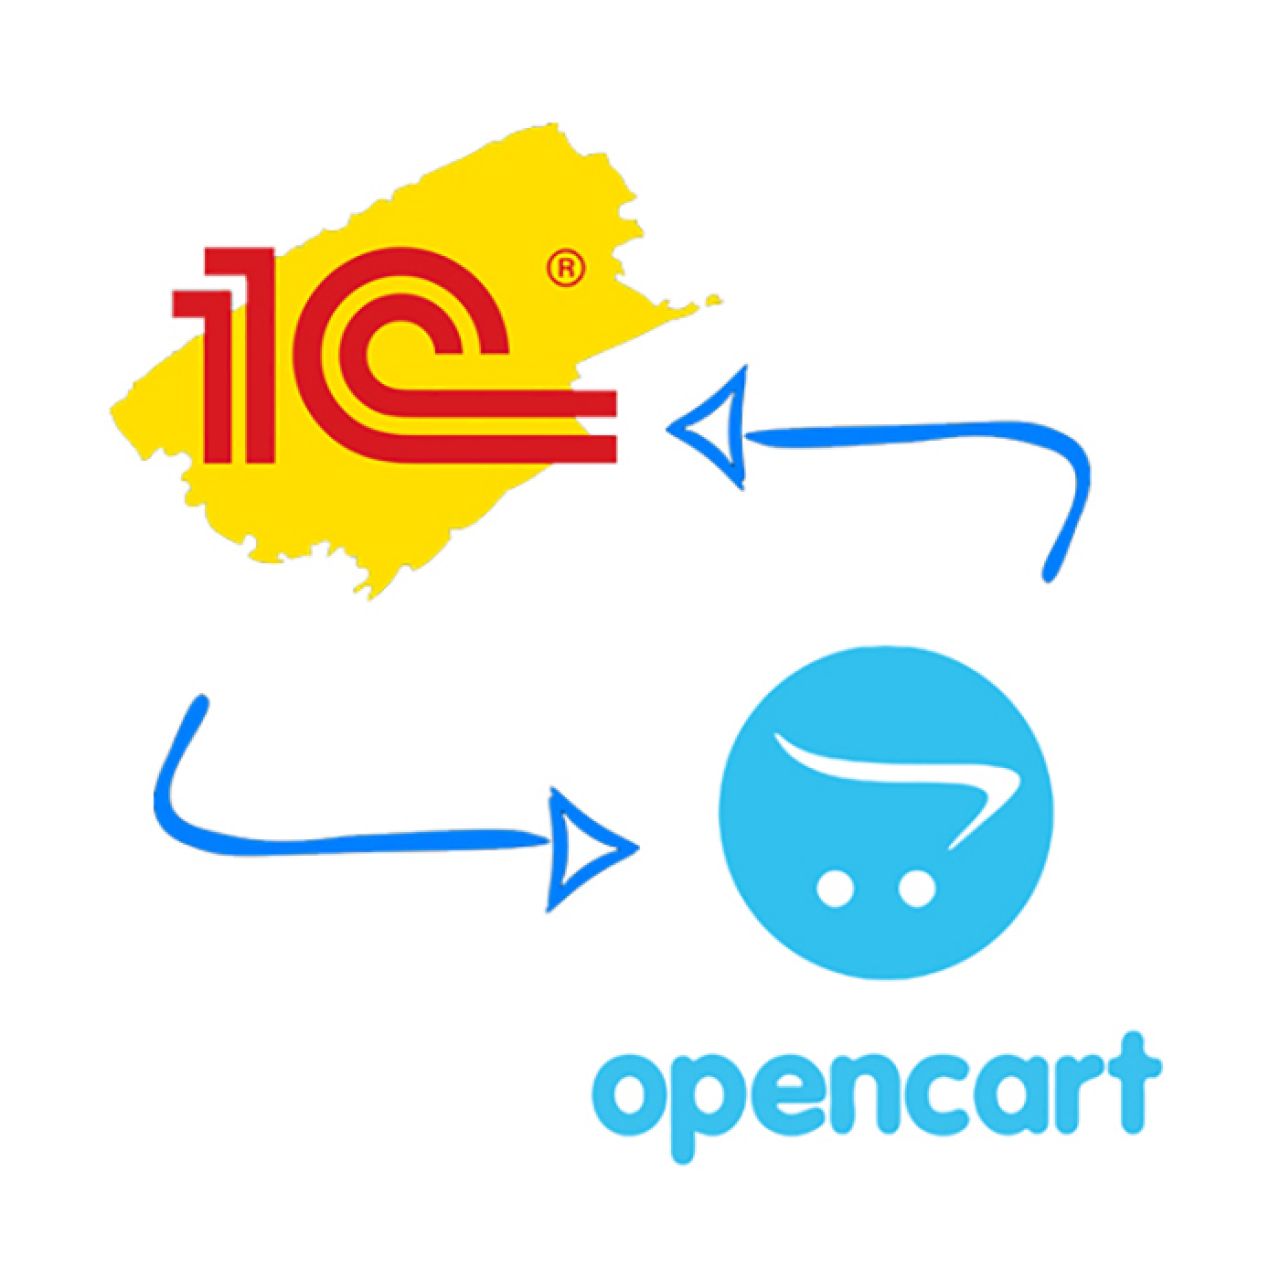 Обмен данными (цена, остатки, номенклатура, заказы) 1С и Opencart (без опций и характеристик) из категории Обмен данными для CMS OpenCart (ОпенКарт)